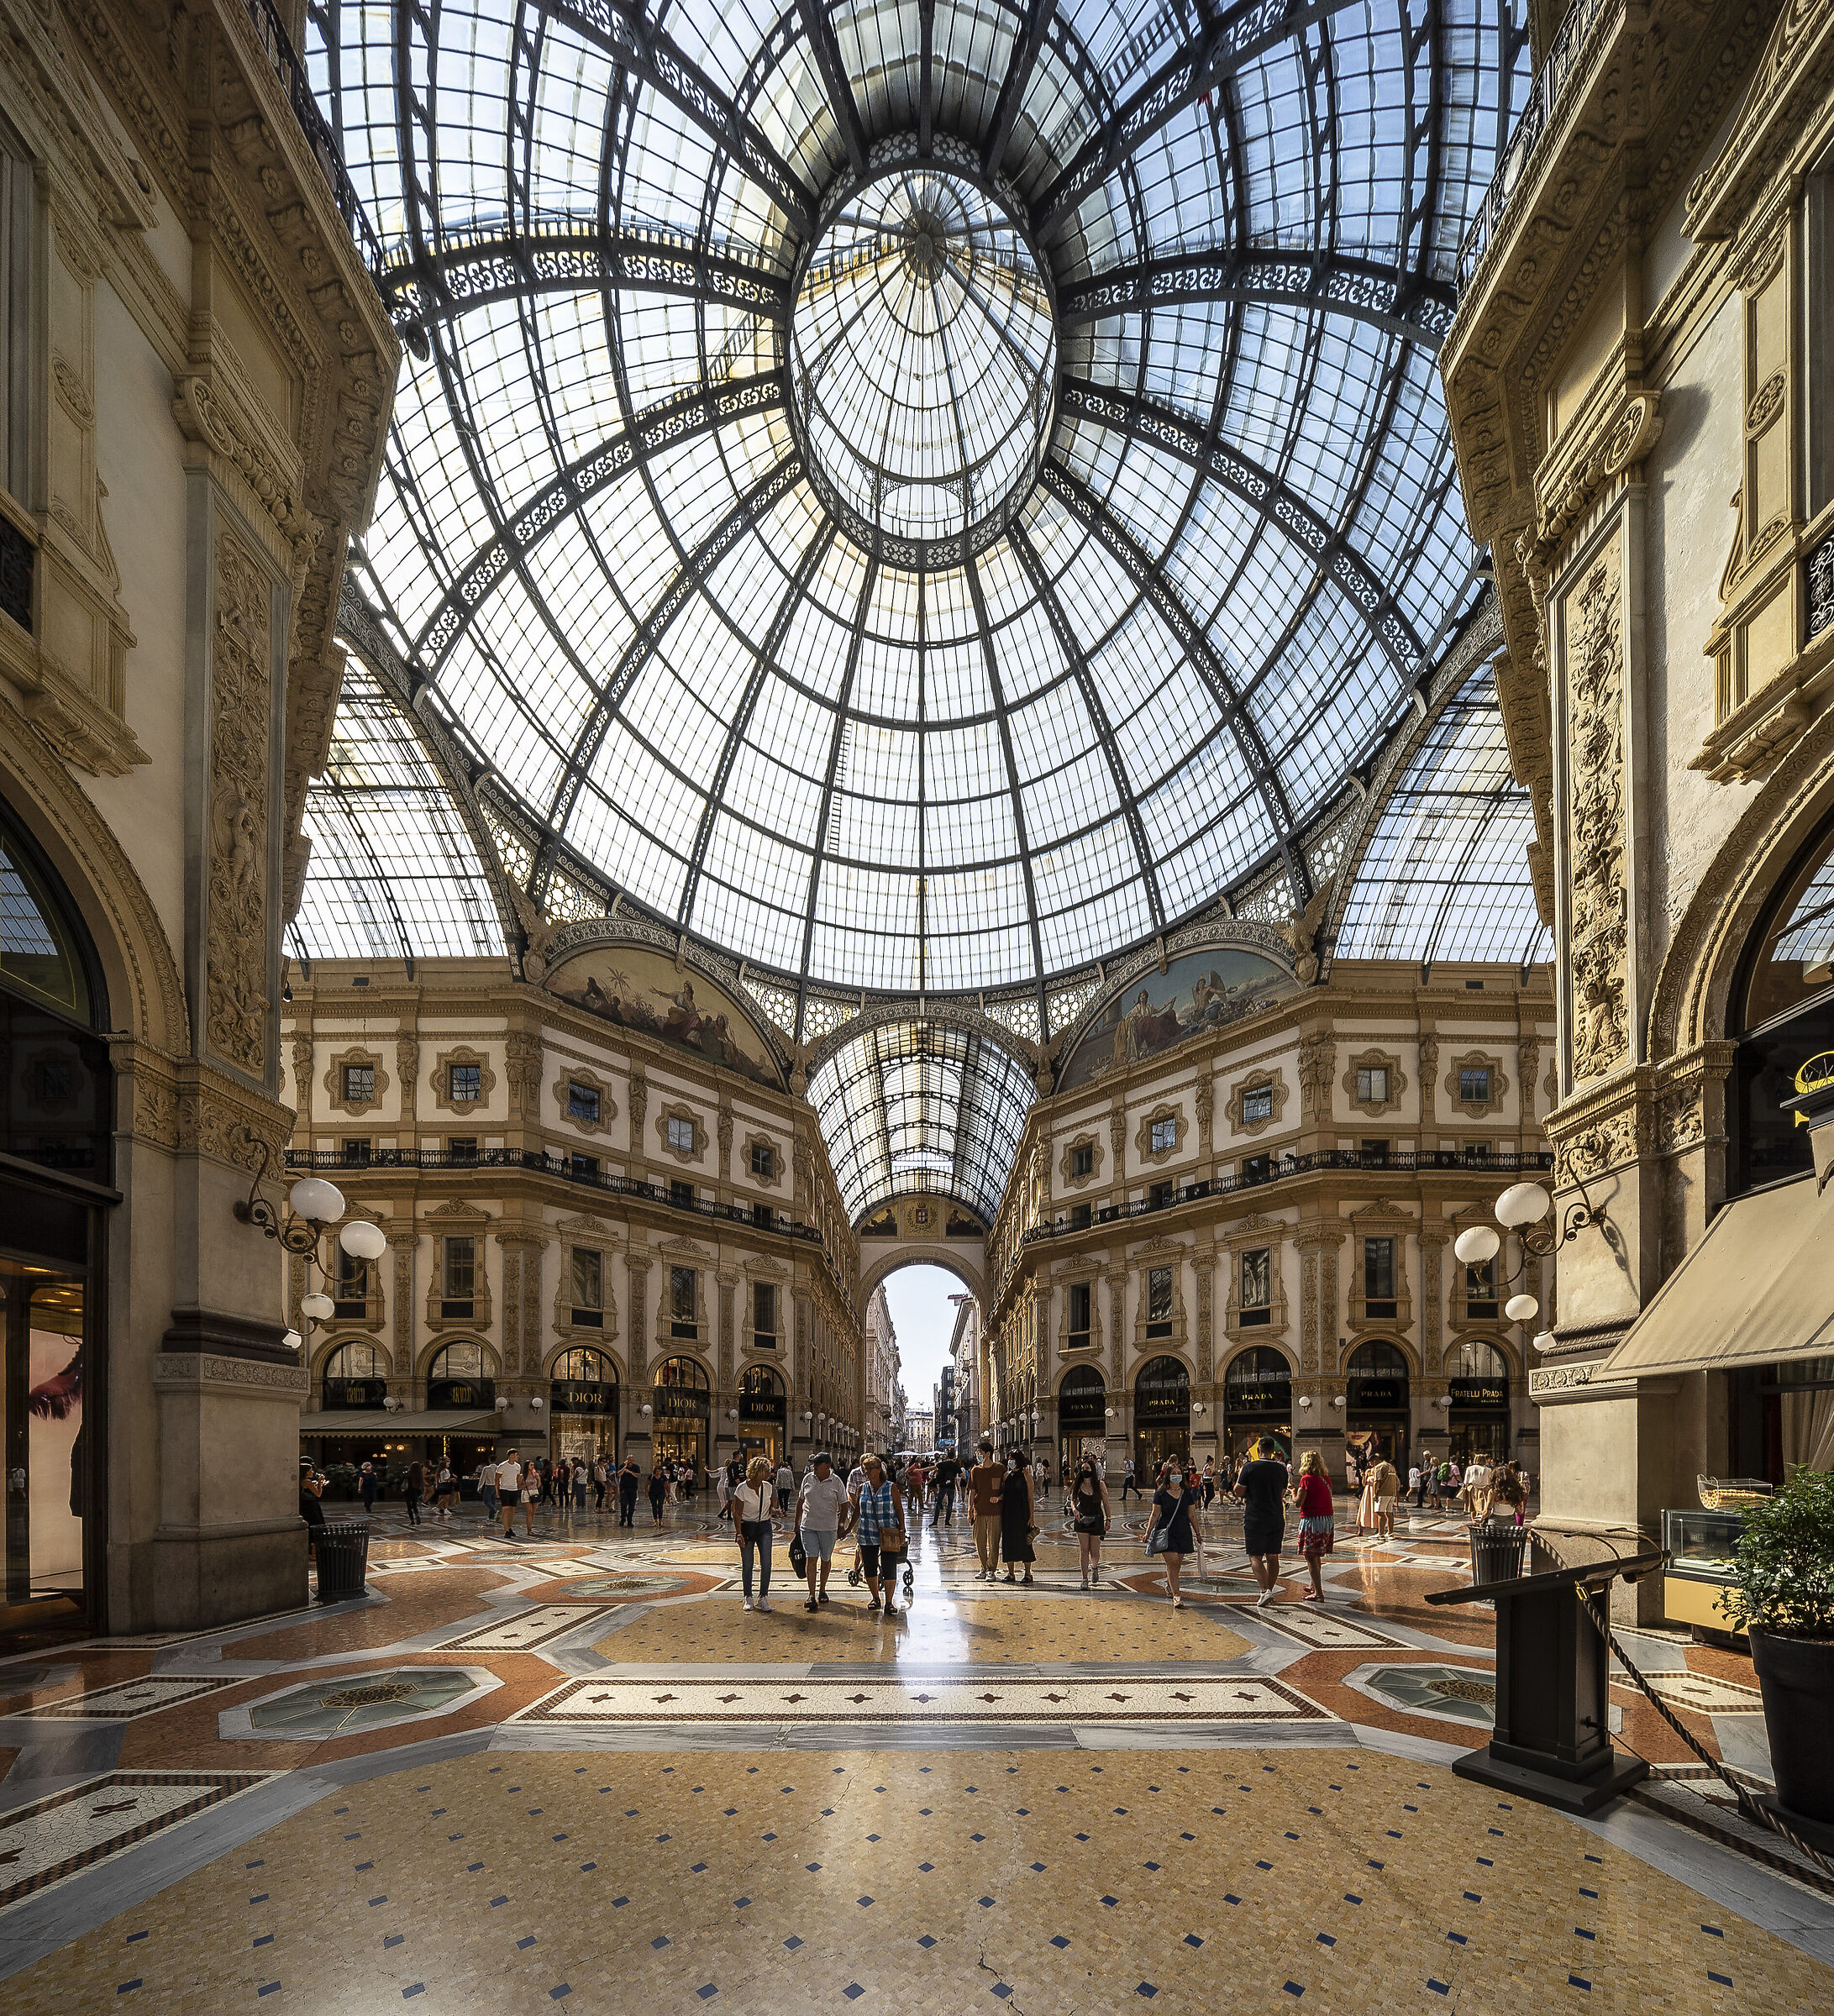 Galleria Vittorio Emanuele II - 3 September 2021, 15:29...